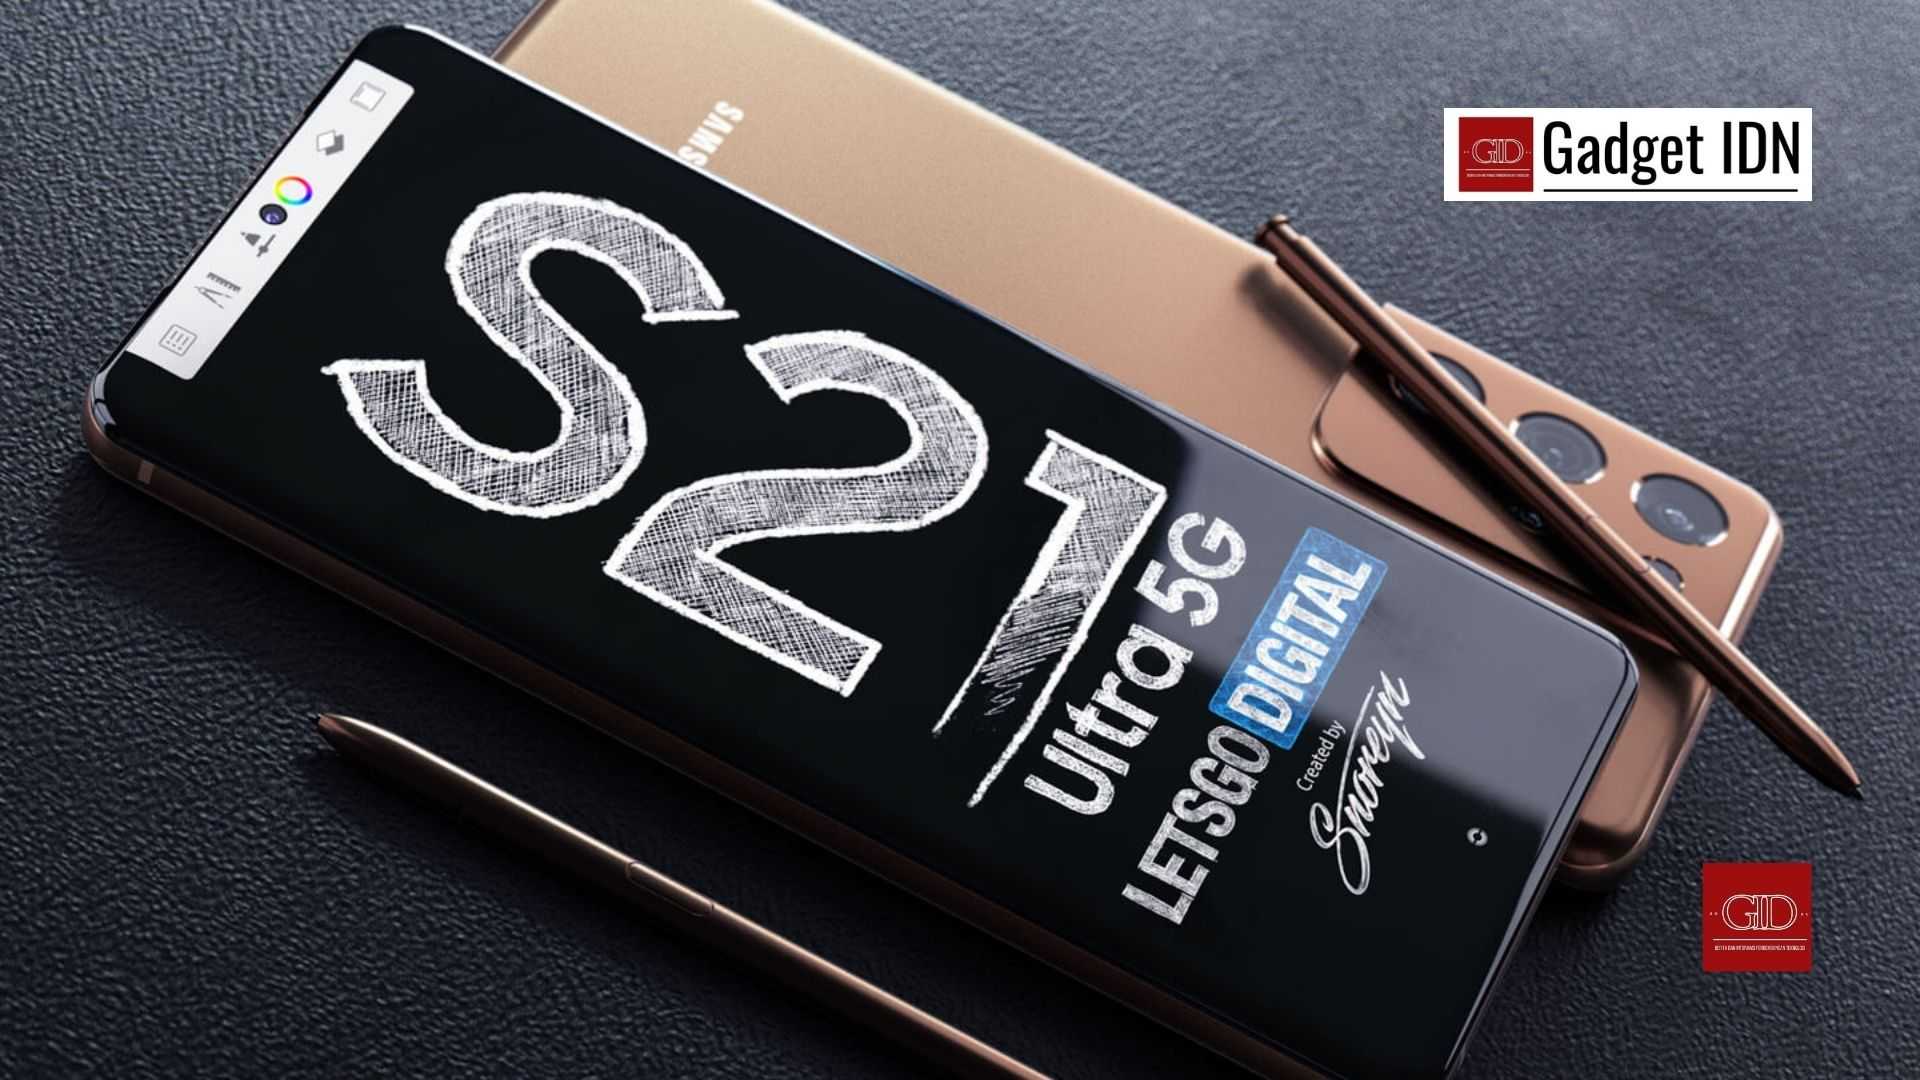 7 Tips Lebih Produktif dengan S Pen di Galaxy S21 Ultra 5G